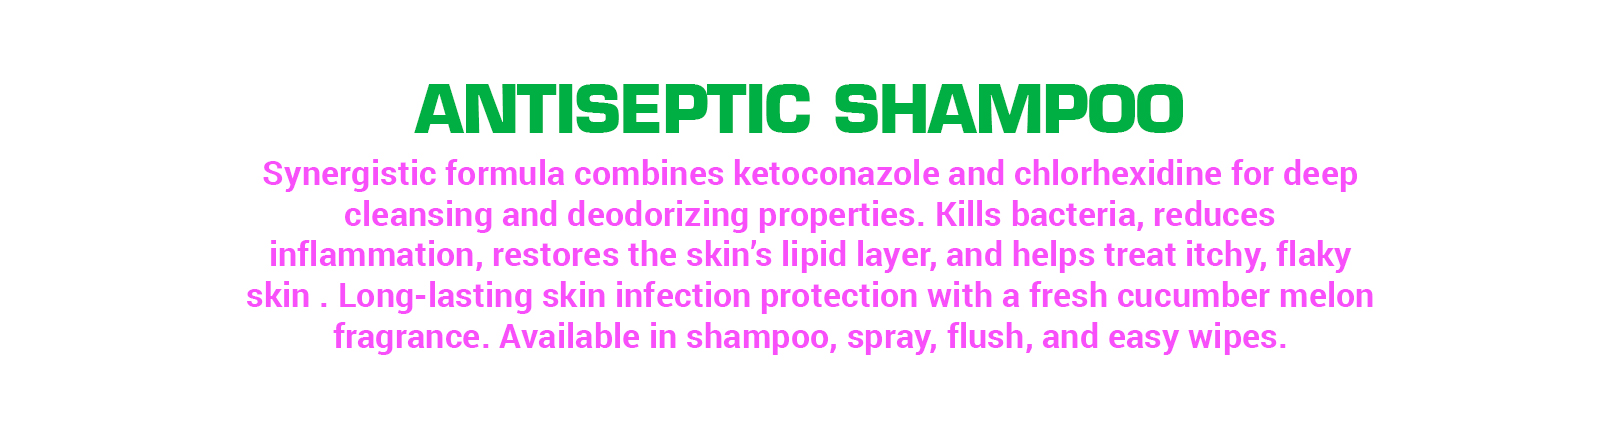 antiseptic-shampoo